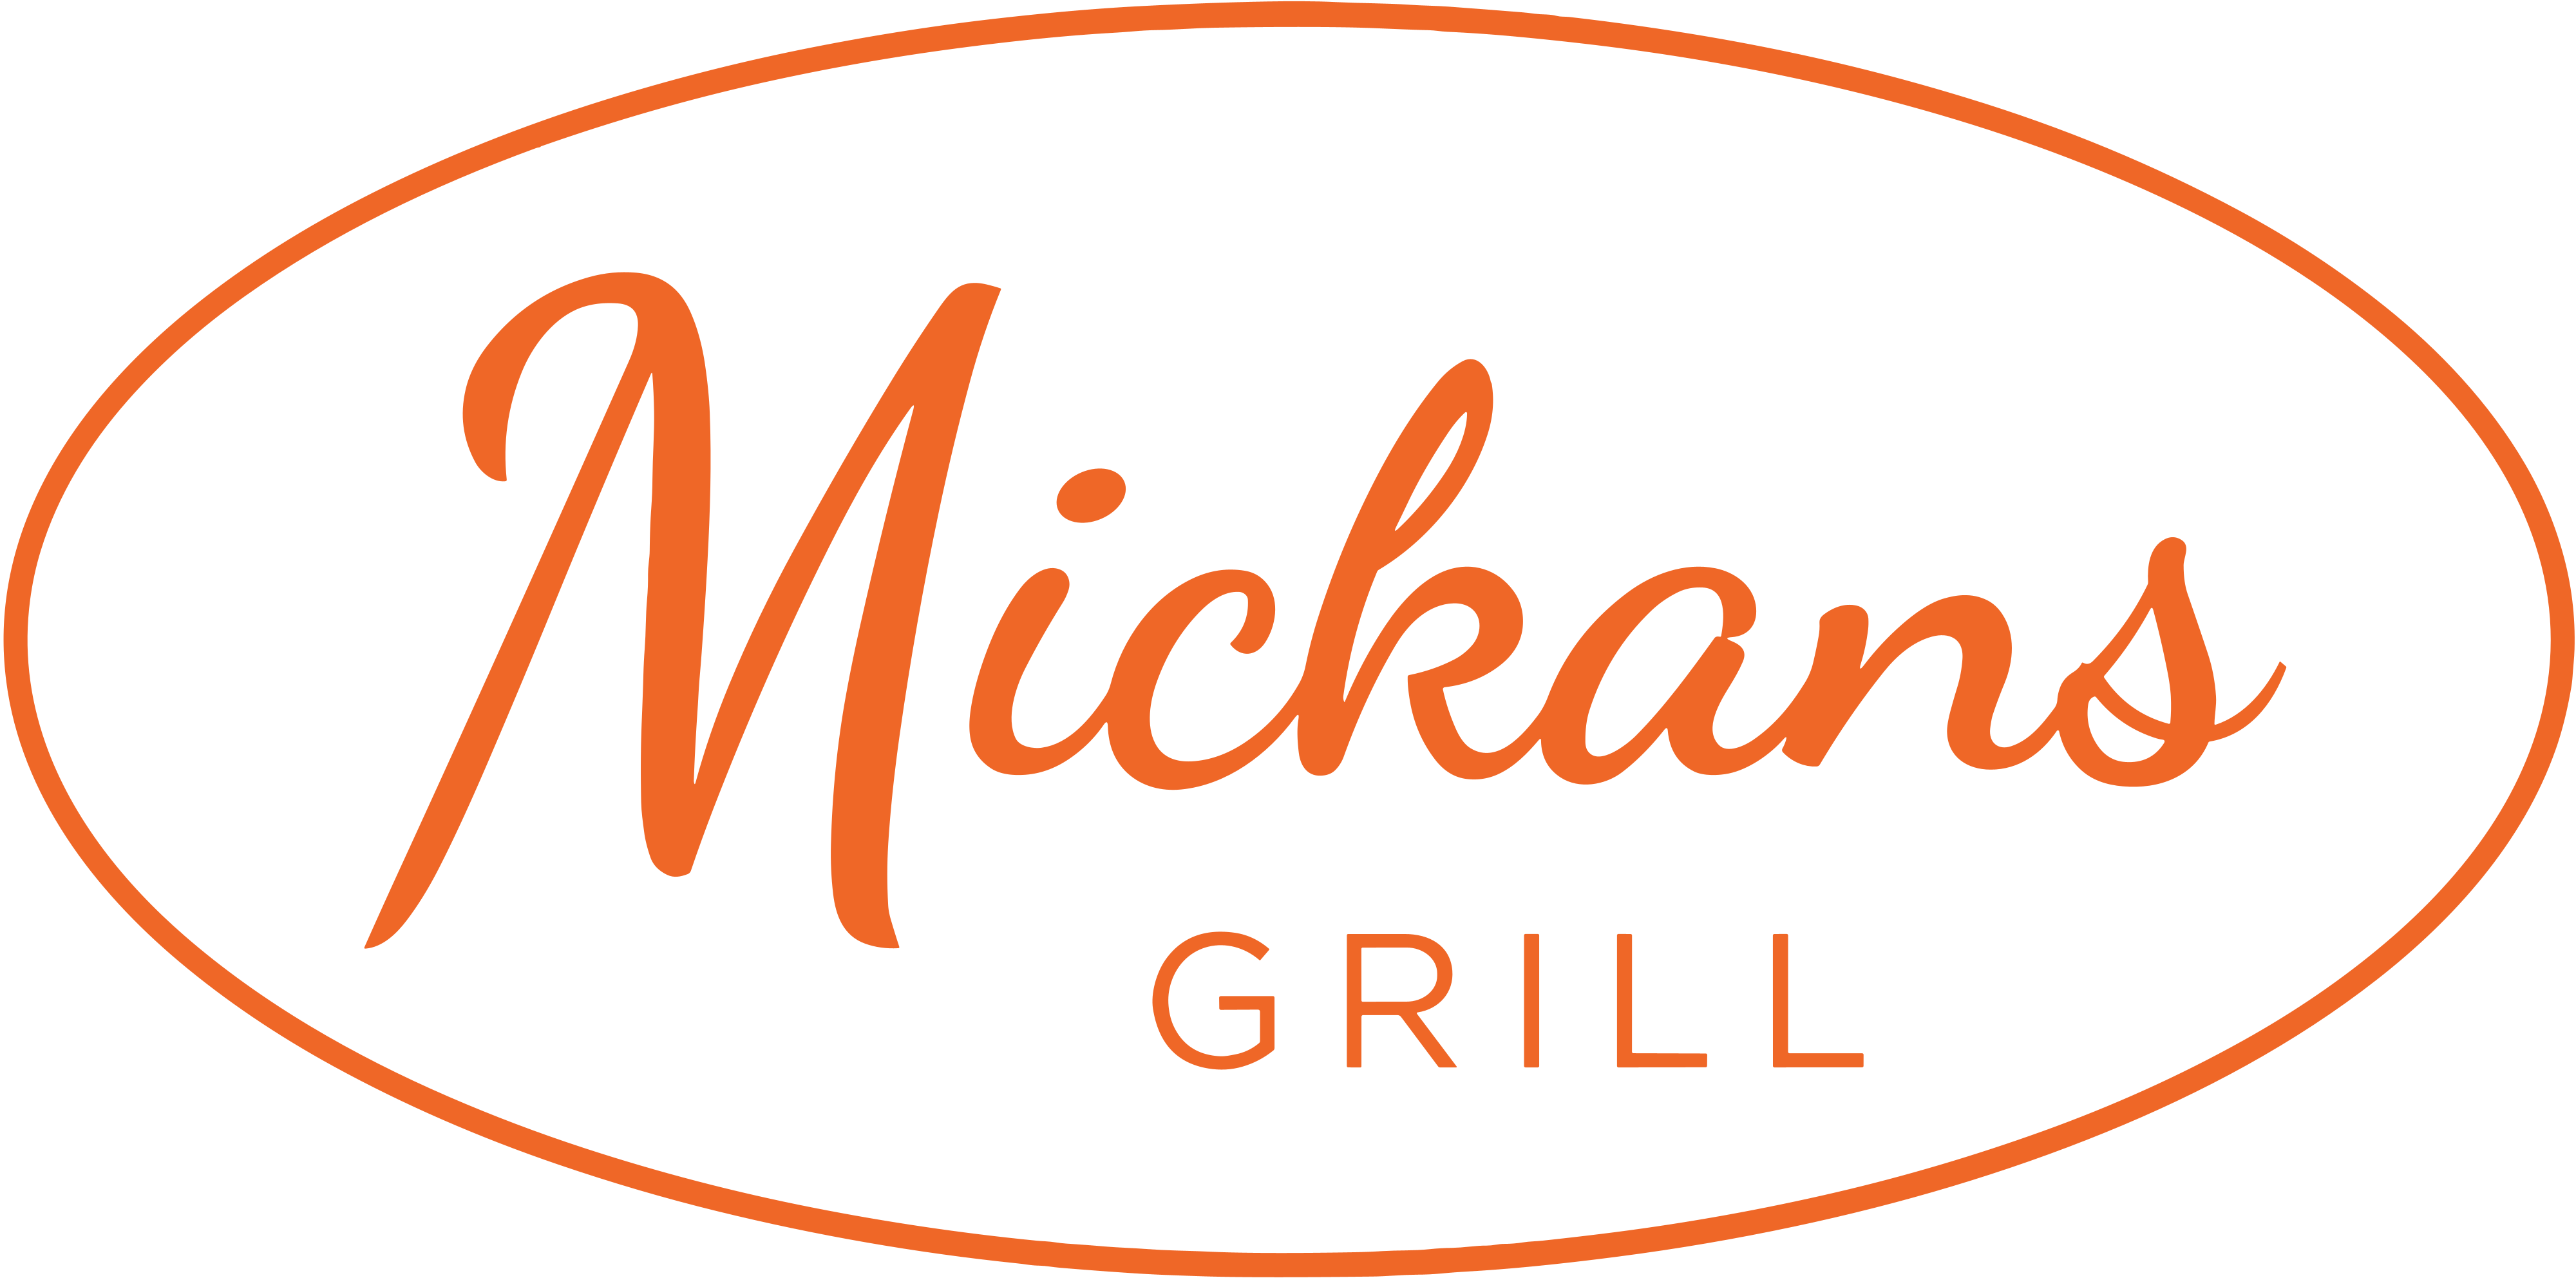 Mickans Grill